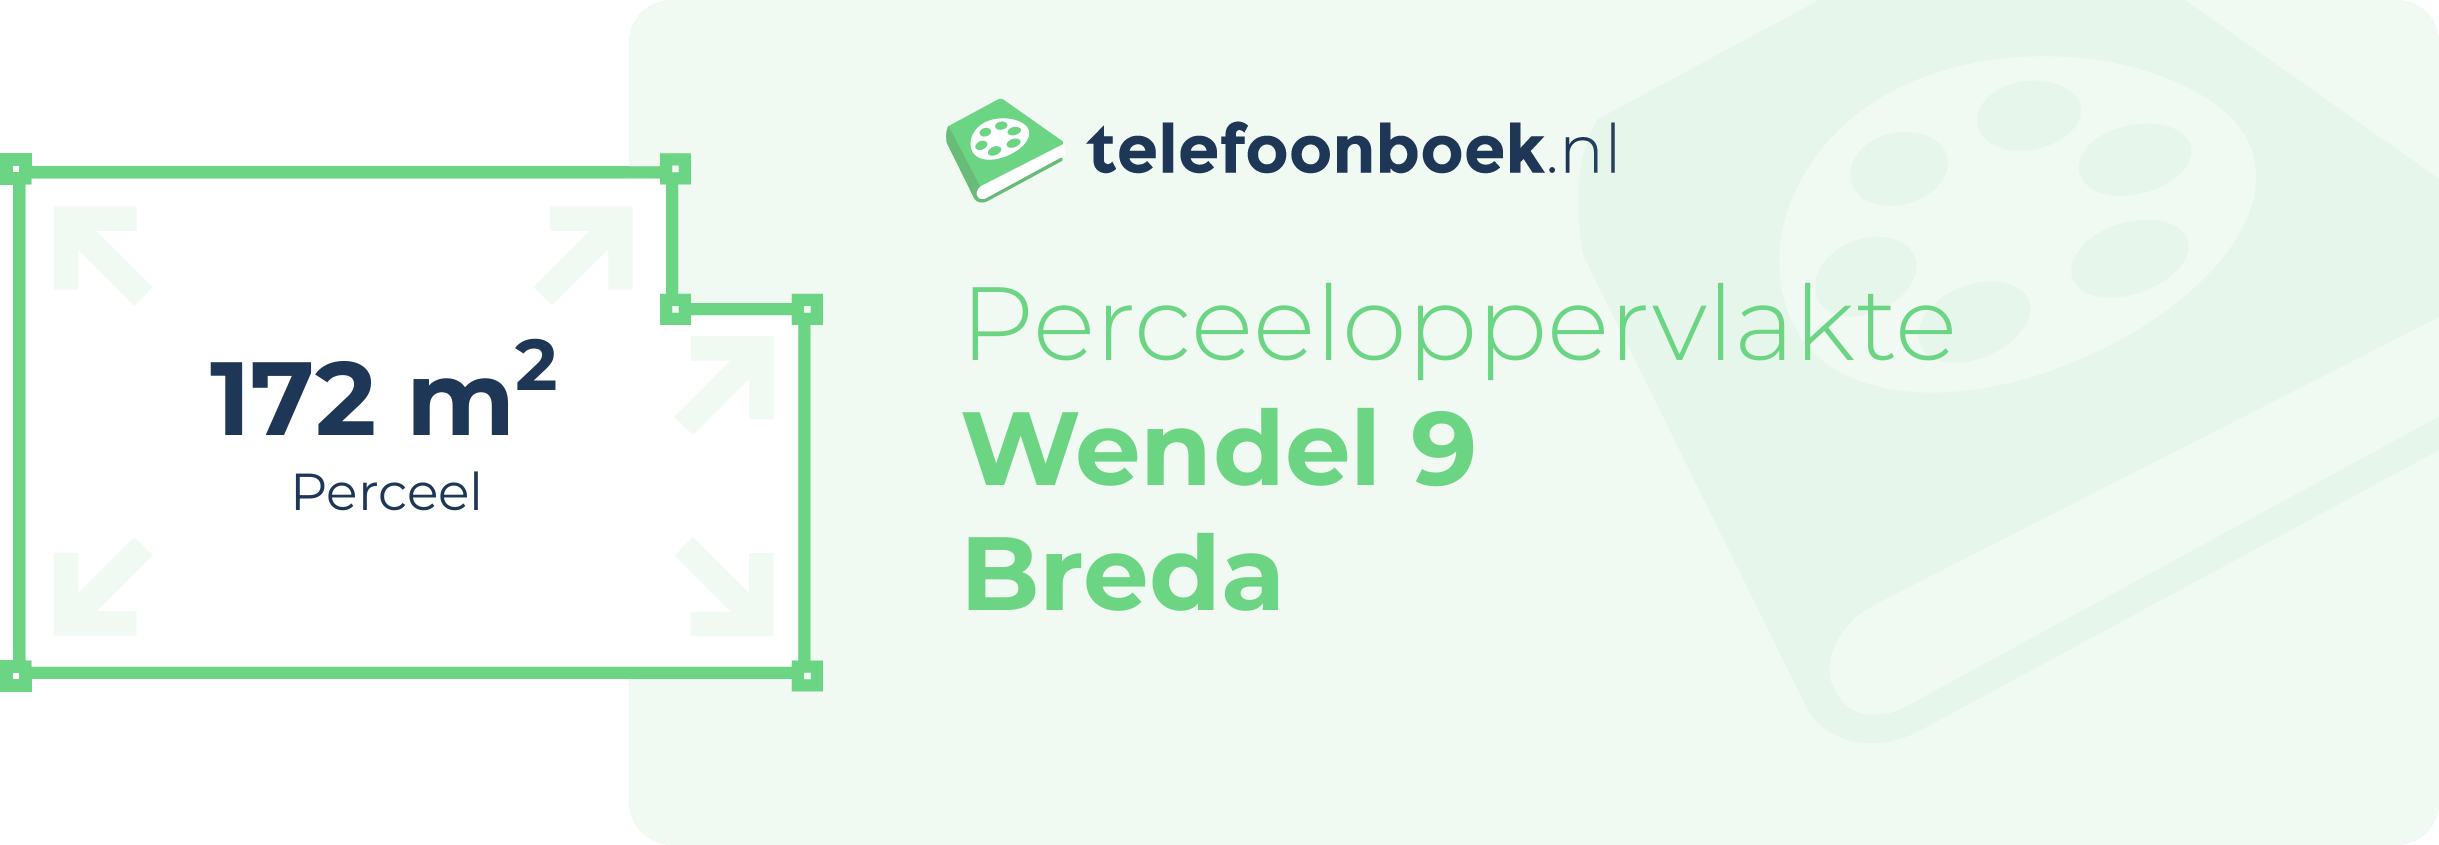 Perceeloppervlakte Wendel 9 Breda